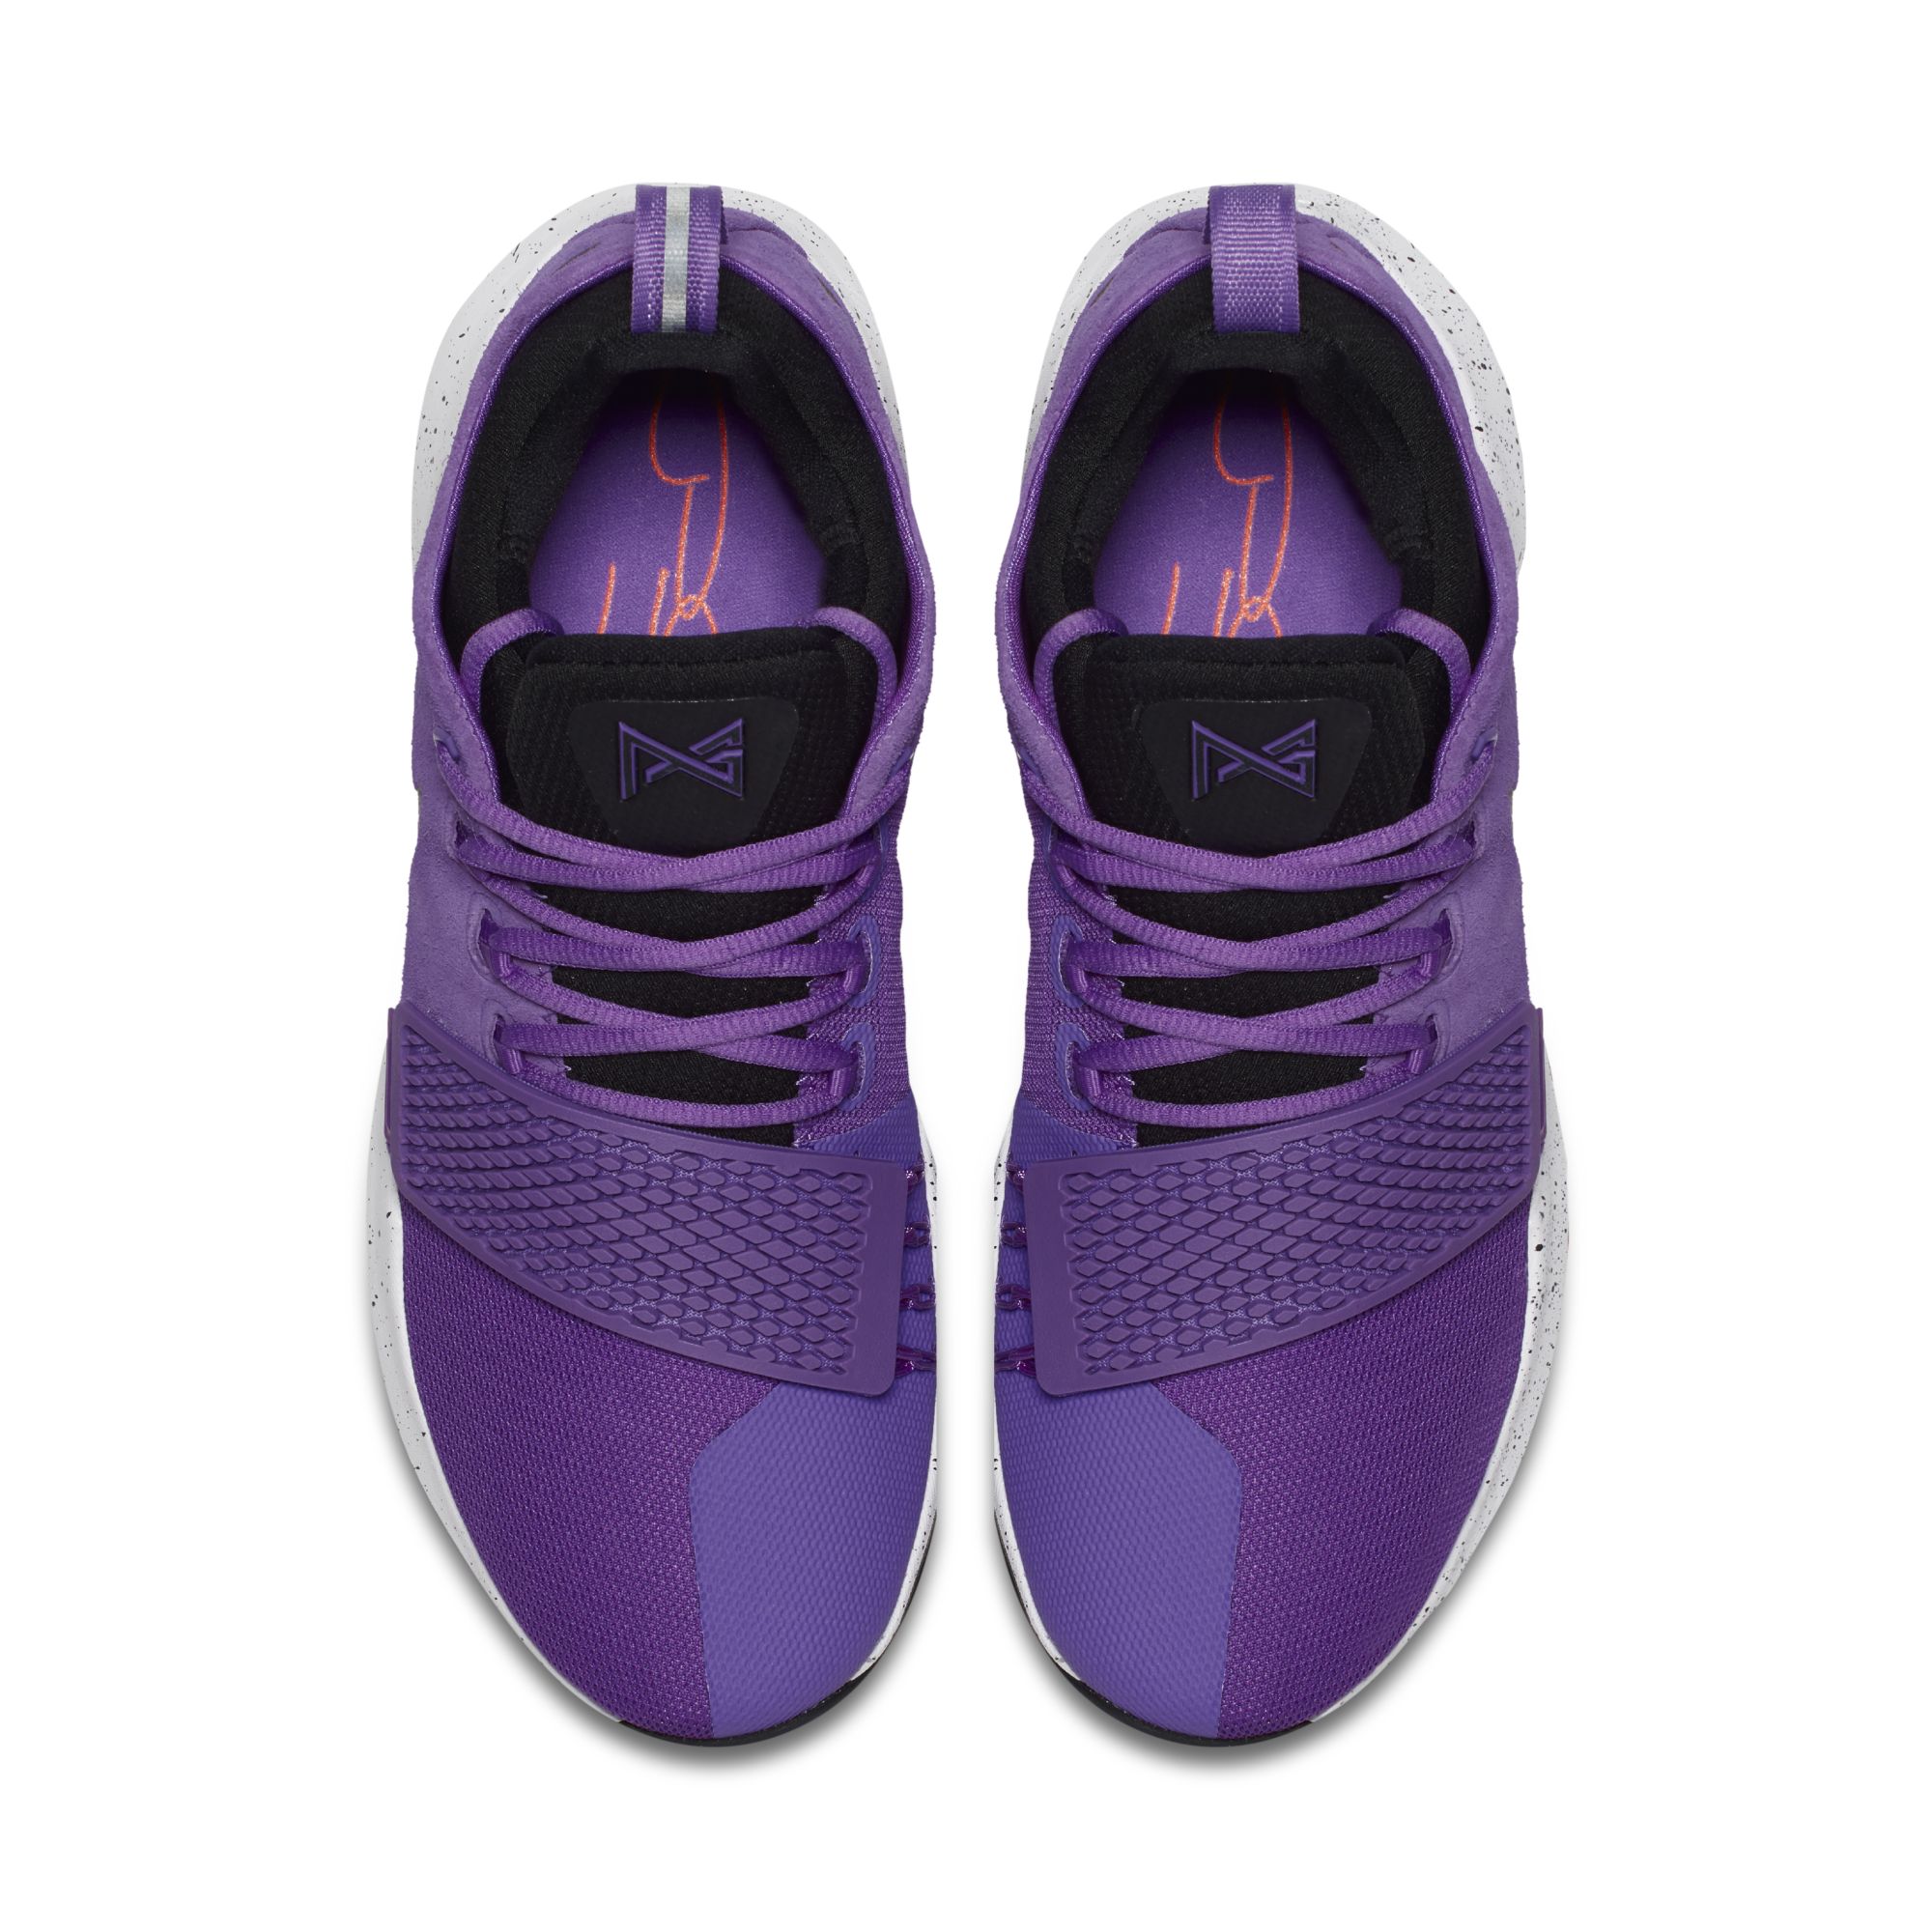 pg1 purple